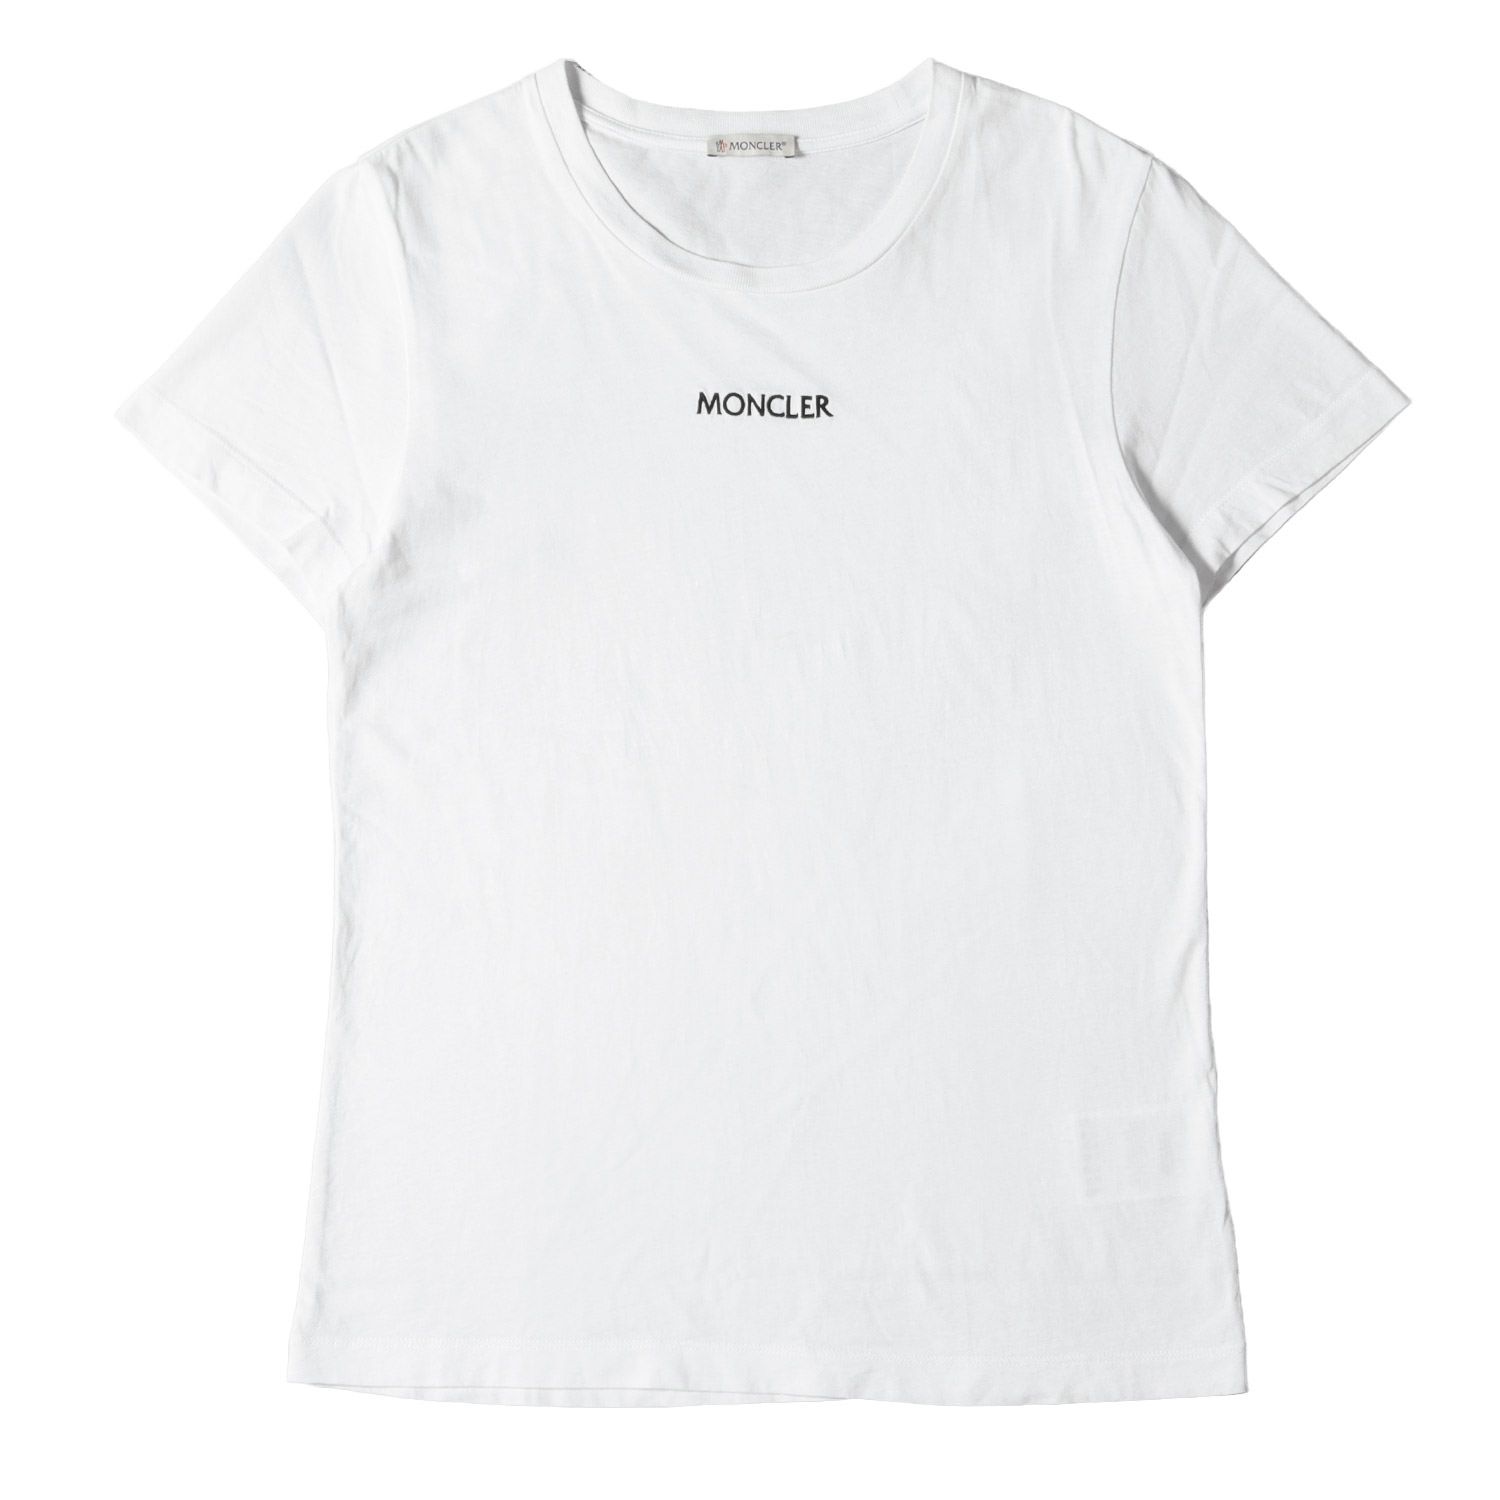 MONCLER モンクレール Tシャツ サイズ:M 21SS ロゴ 刺繍 クルーネック